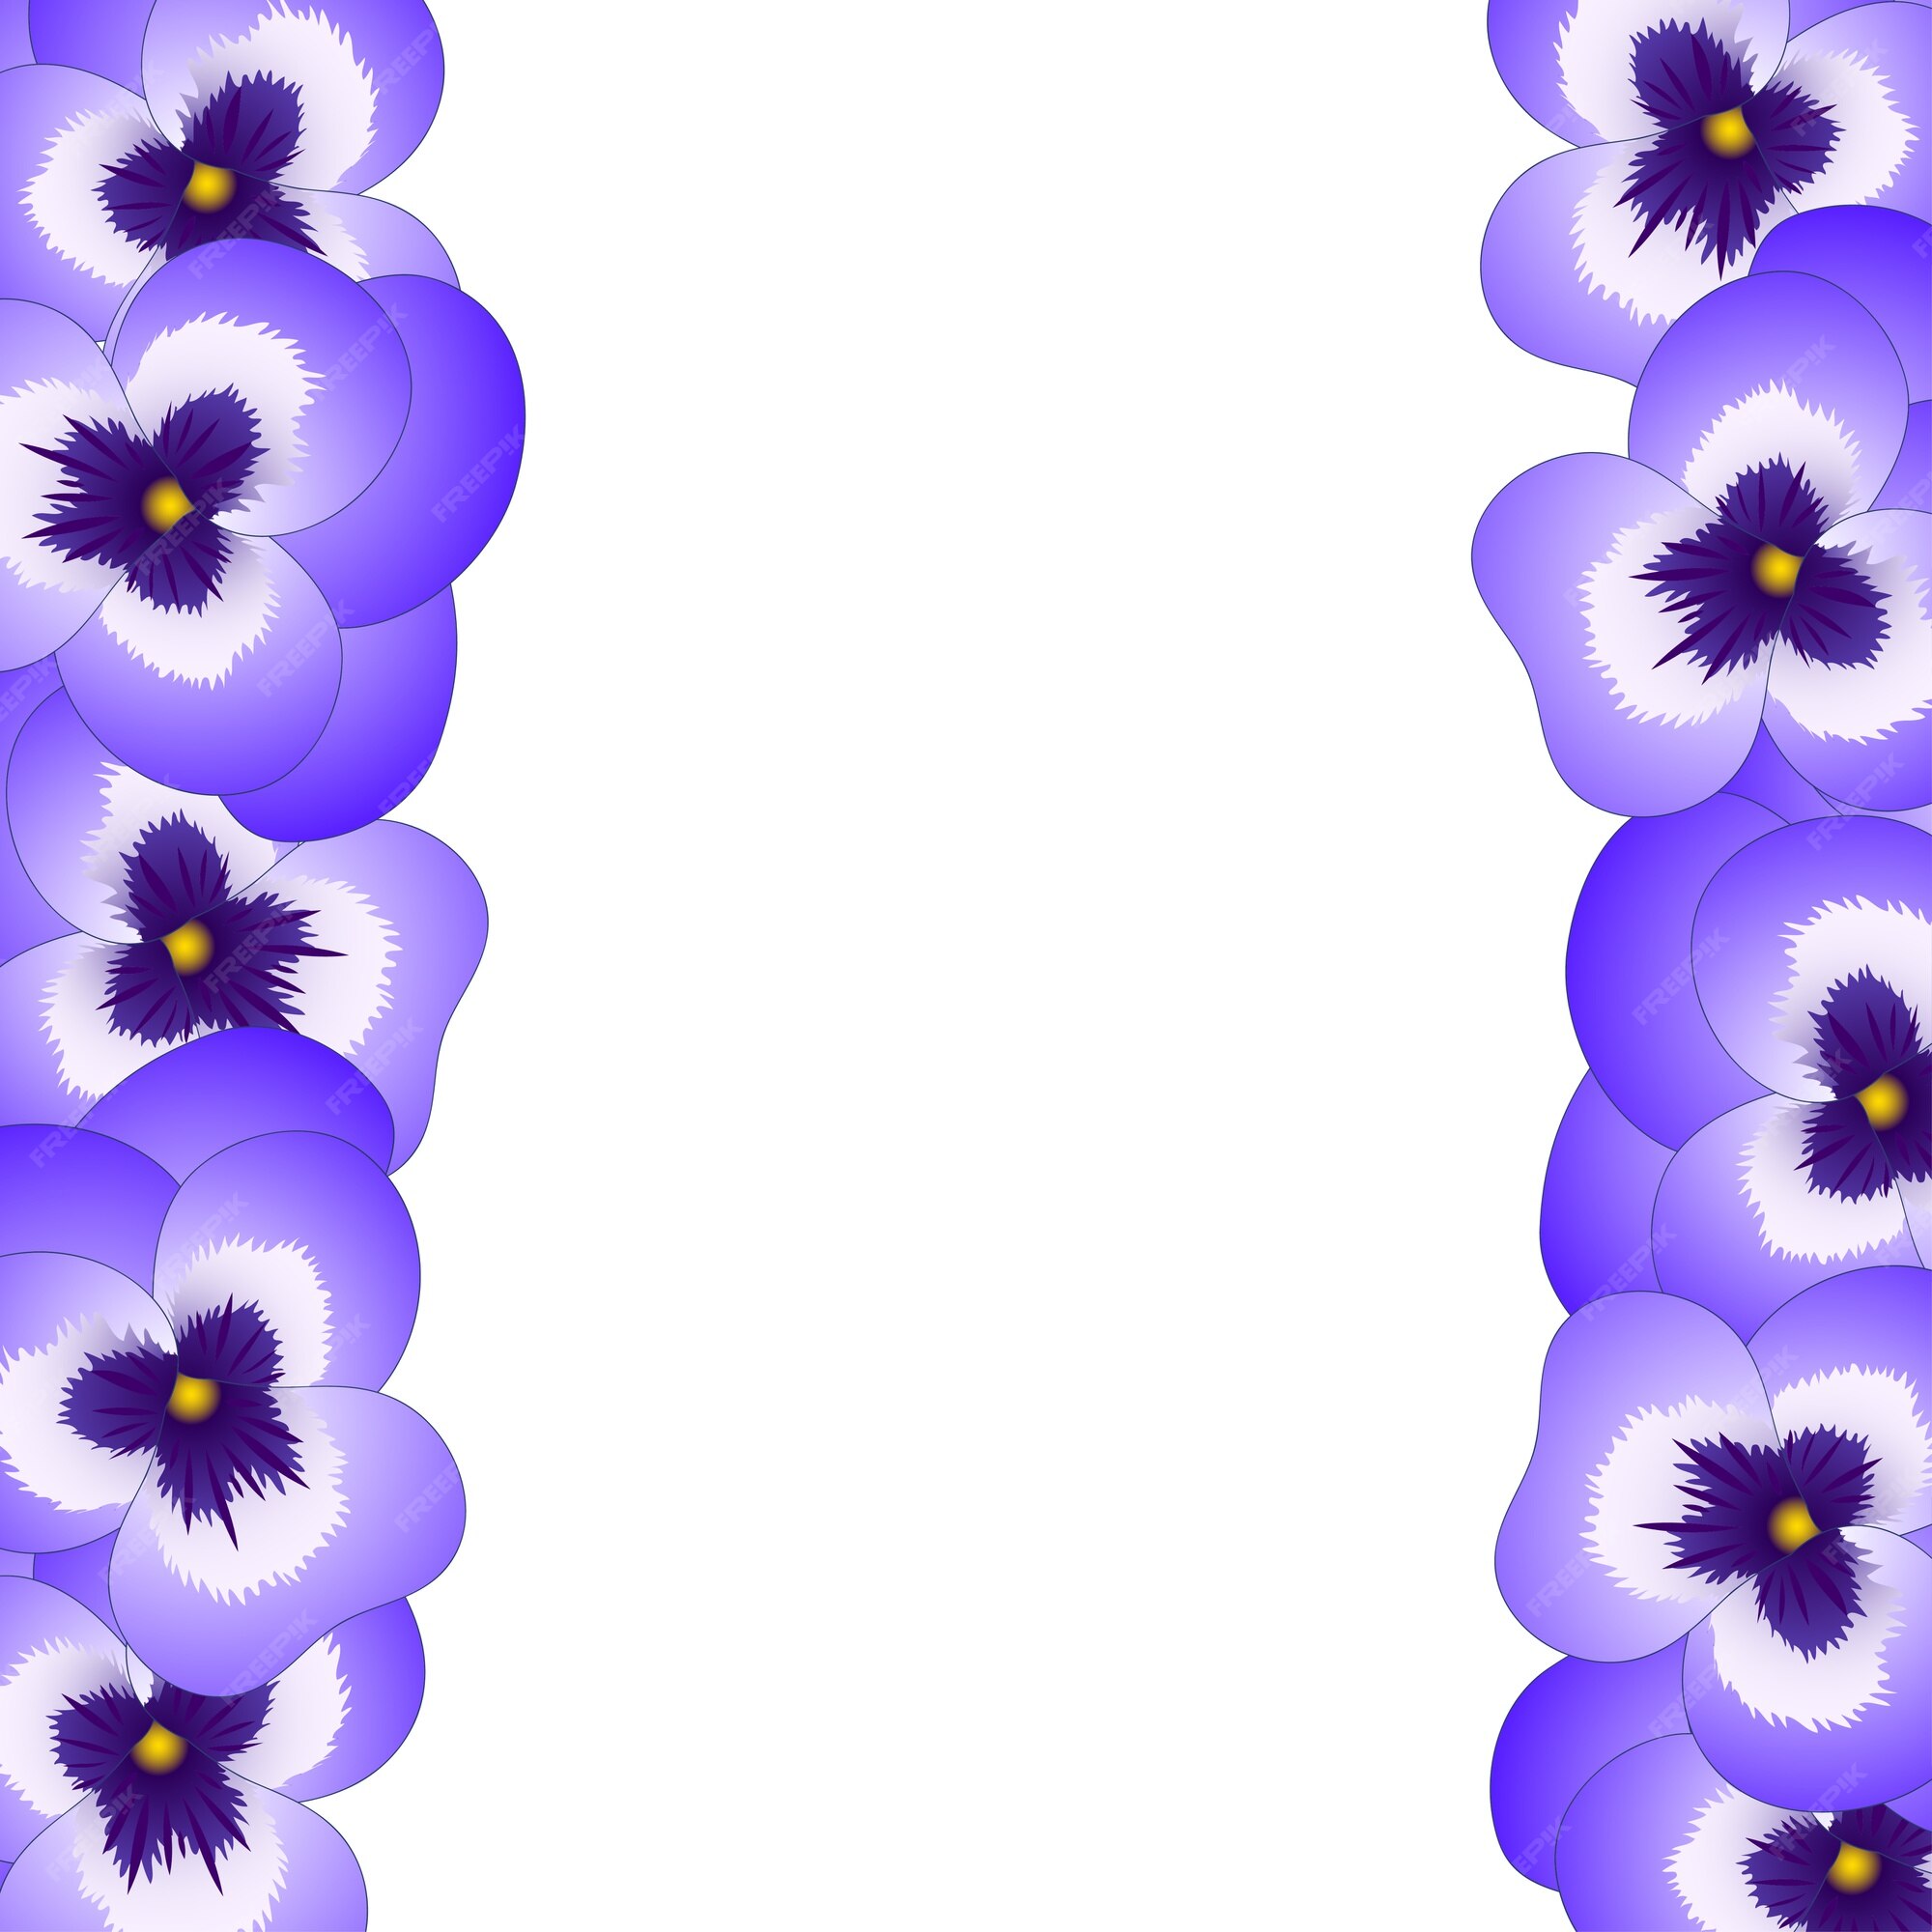 Bordure De Fleurs De Pensée Violette | Vecteur Premium